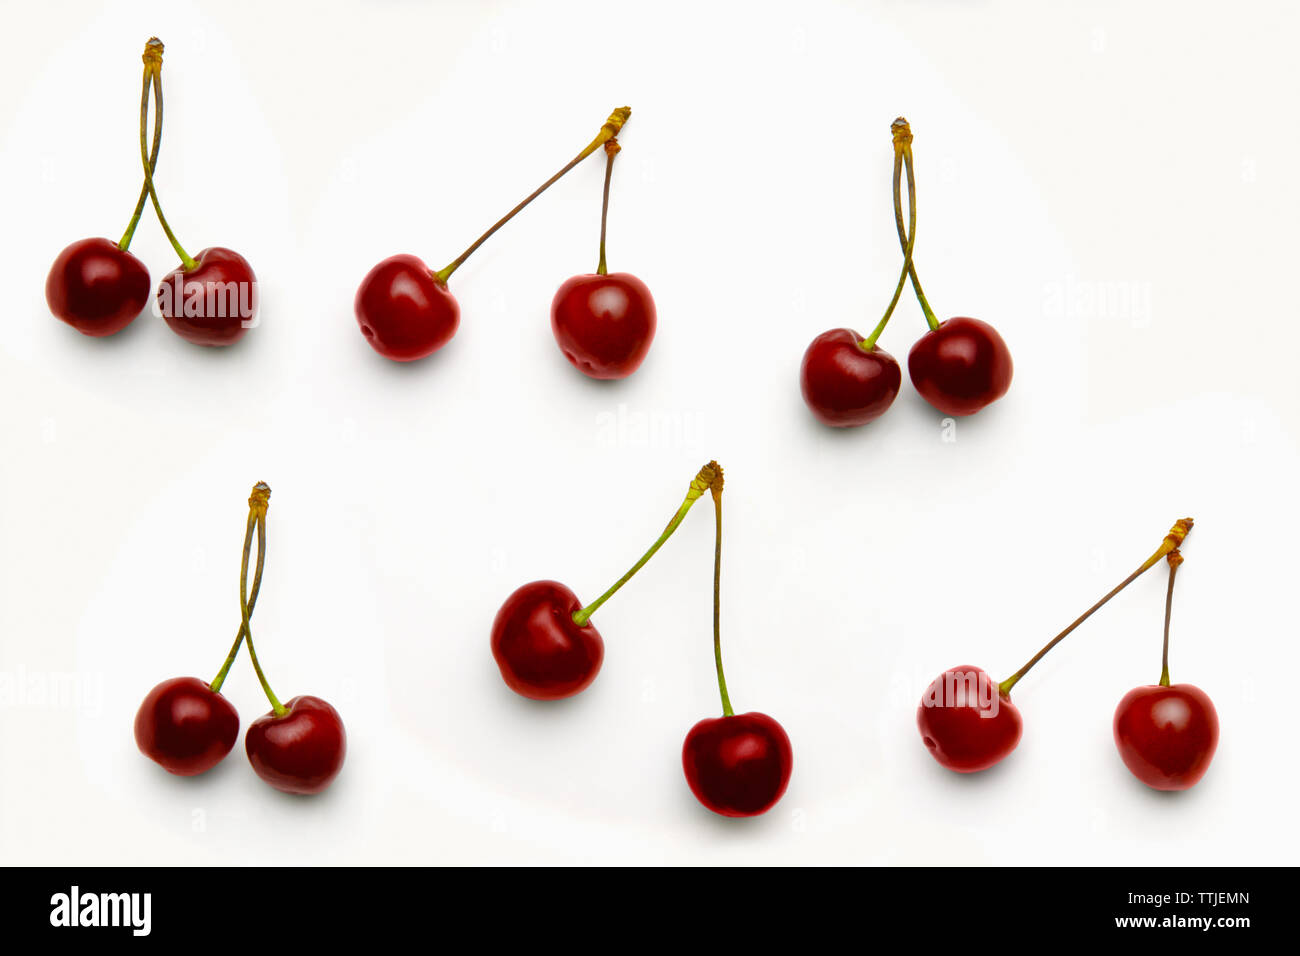 Close up of cherries Stock Photo